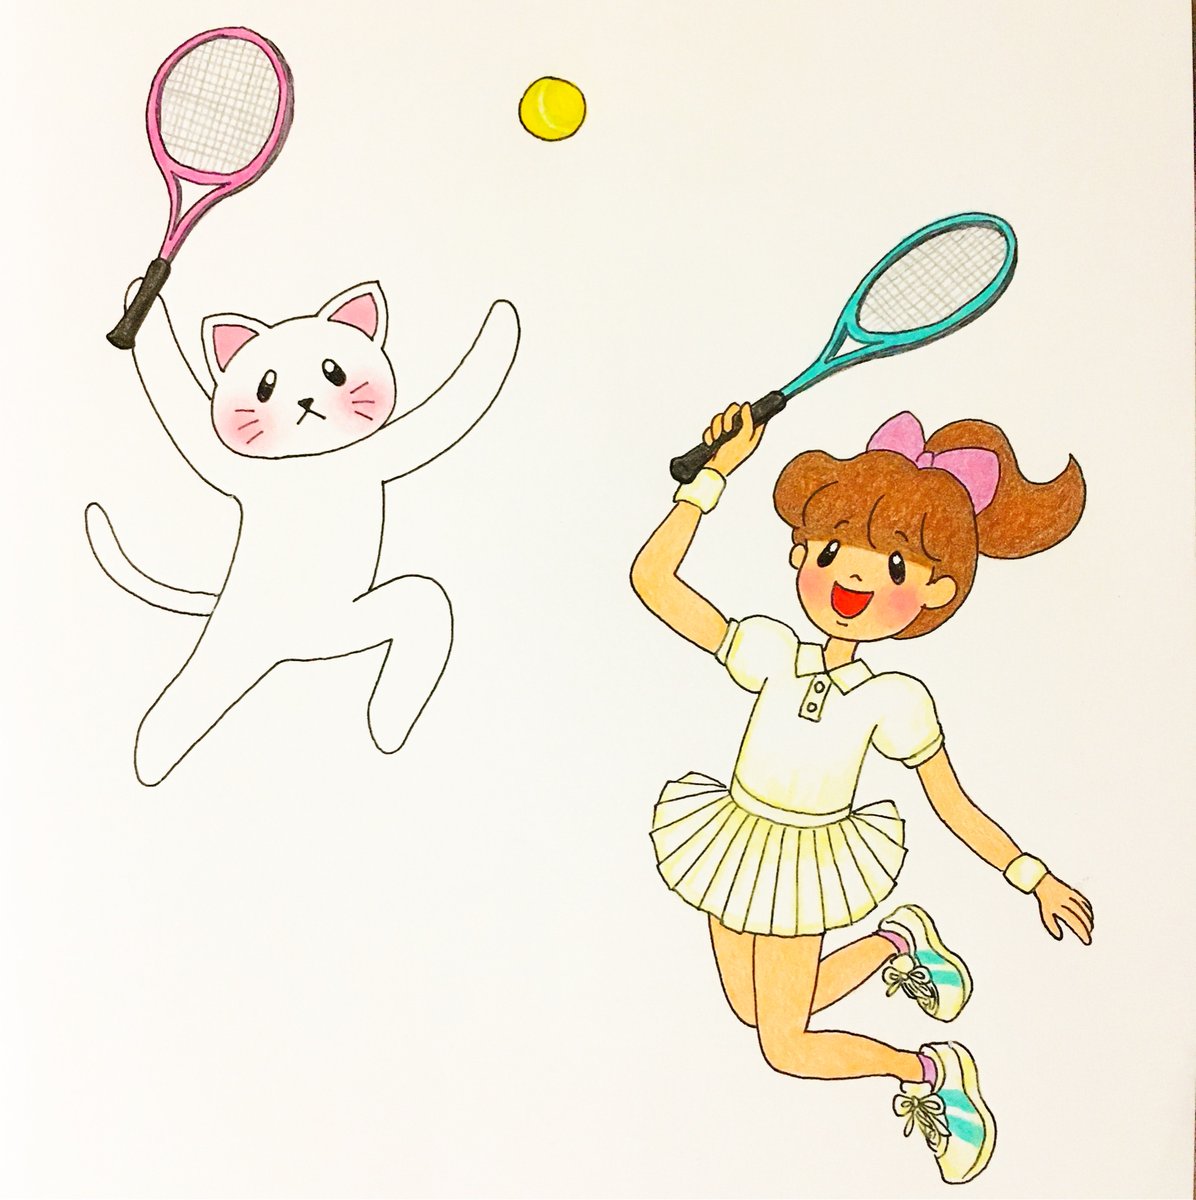 ট ইট র ゆうぴ 今回はテニスをしているイラストを描きました 中学生の頃 軟式テニス部に入っていて テニスが楽しくて夢中になって部活をやっていました またいつかテニスがやりたいです イラスト 色鉛筆画 色鉛筆 イラストレーション 猫 猫